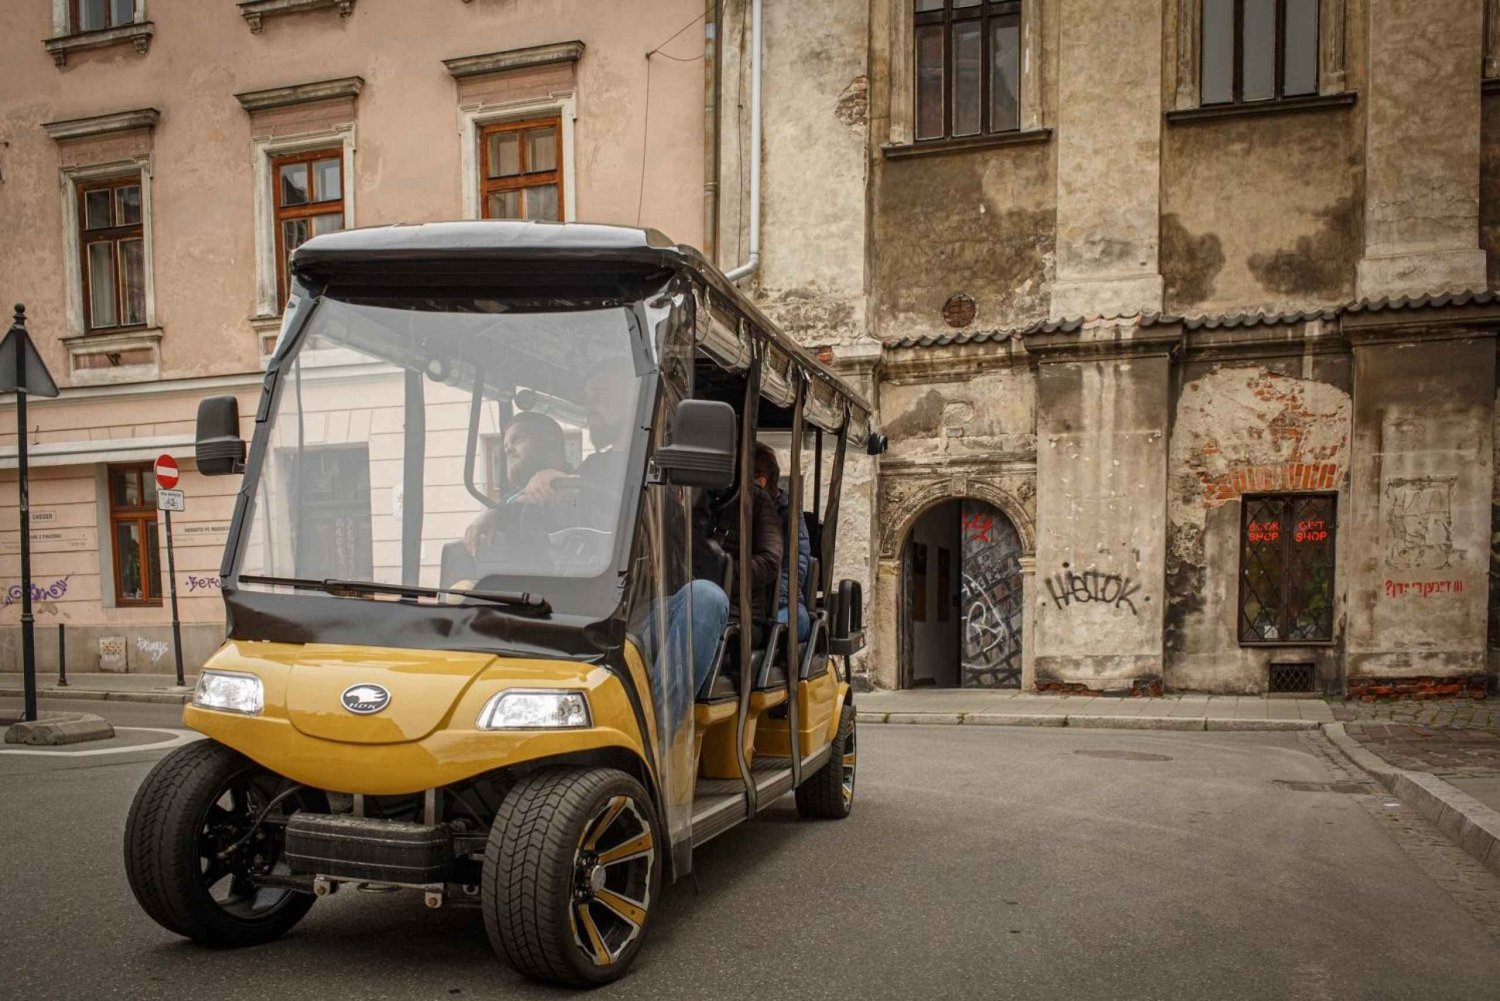 Krakau: Stadtführung Golf Cart & Schindler's Factory Guide Tour